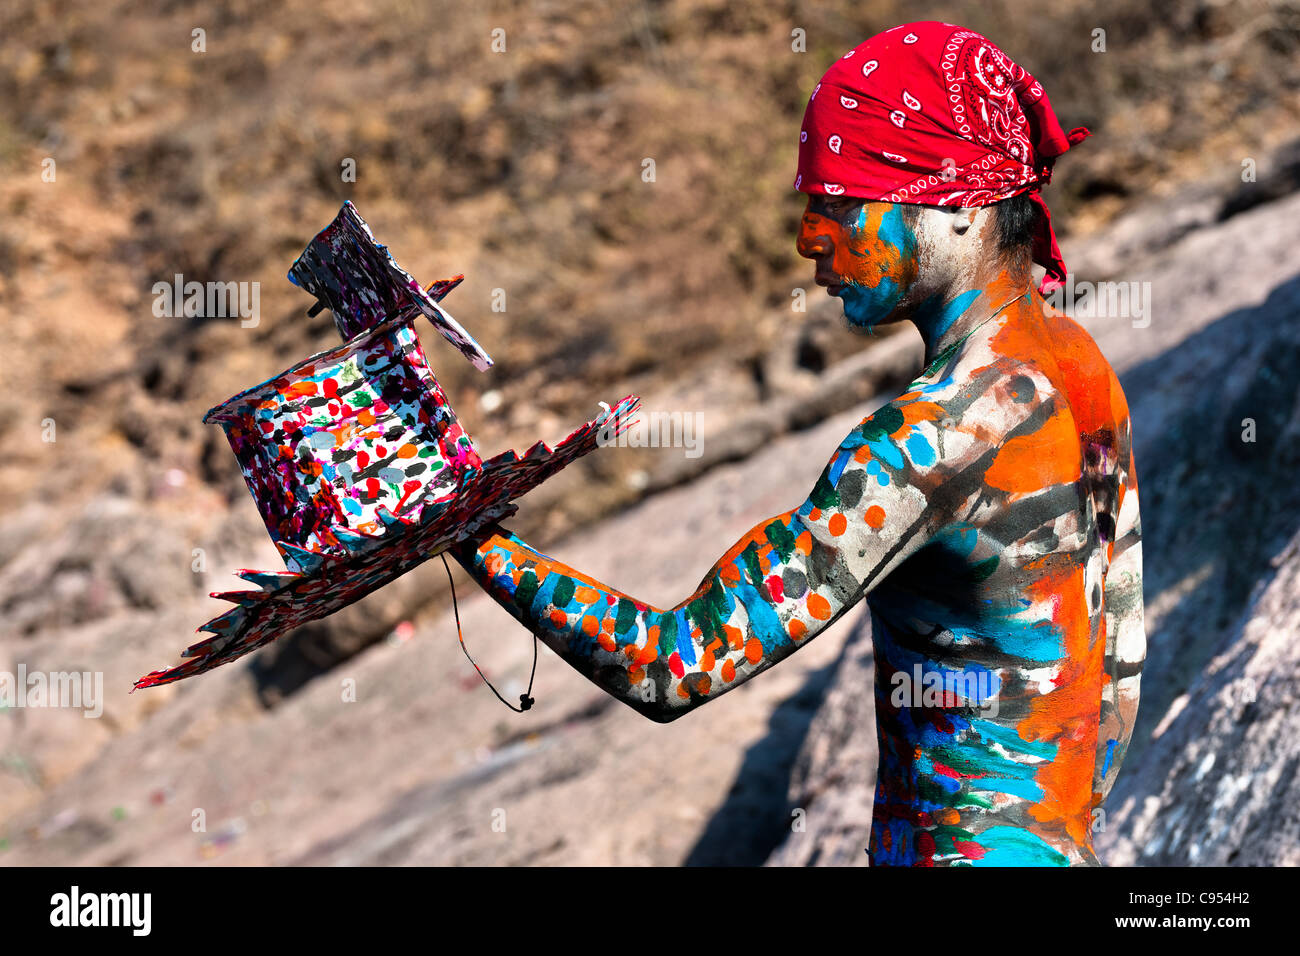 Ein Indianerjunge Cora malt seinen bunten Hut vor der religiösen rituellen Zeremonie der Karwoche in Jesús María, Mexiko. Stockfoto